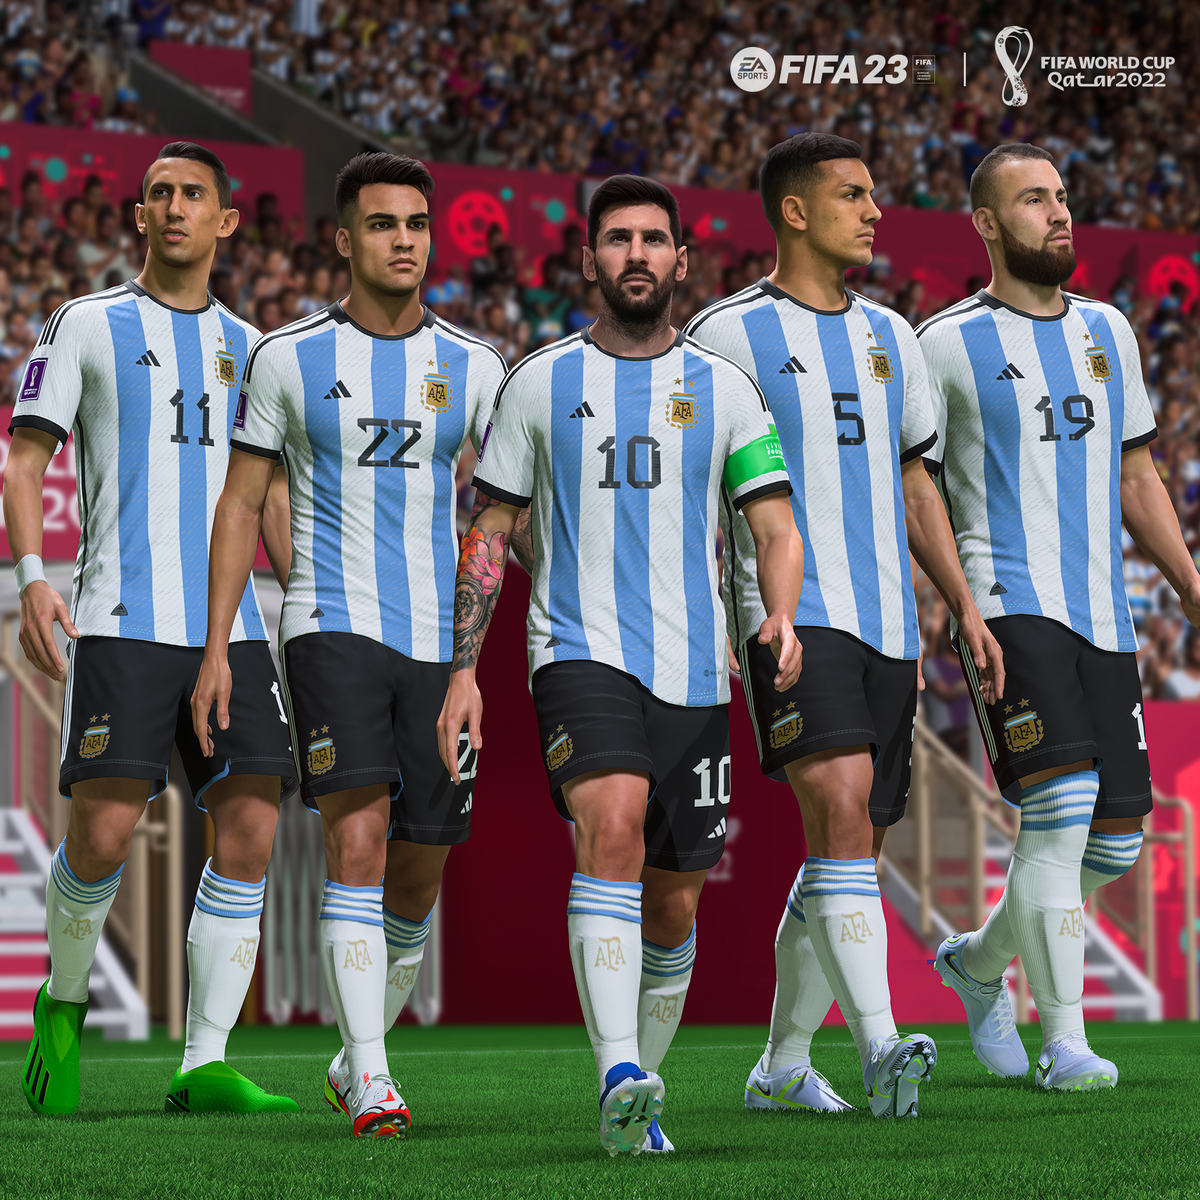 Em simulação, FIFA 23 prevê a Argentina campeã da Copa em final